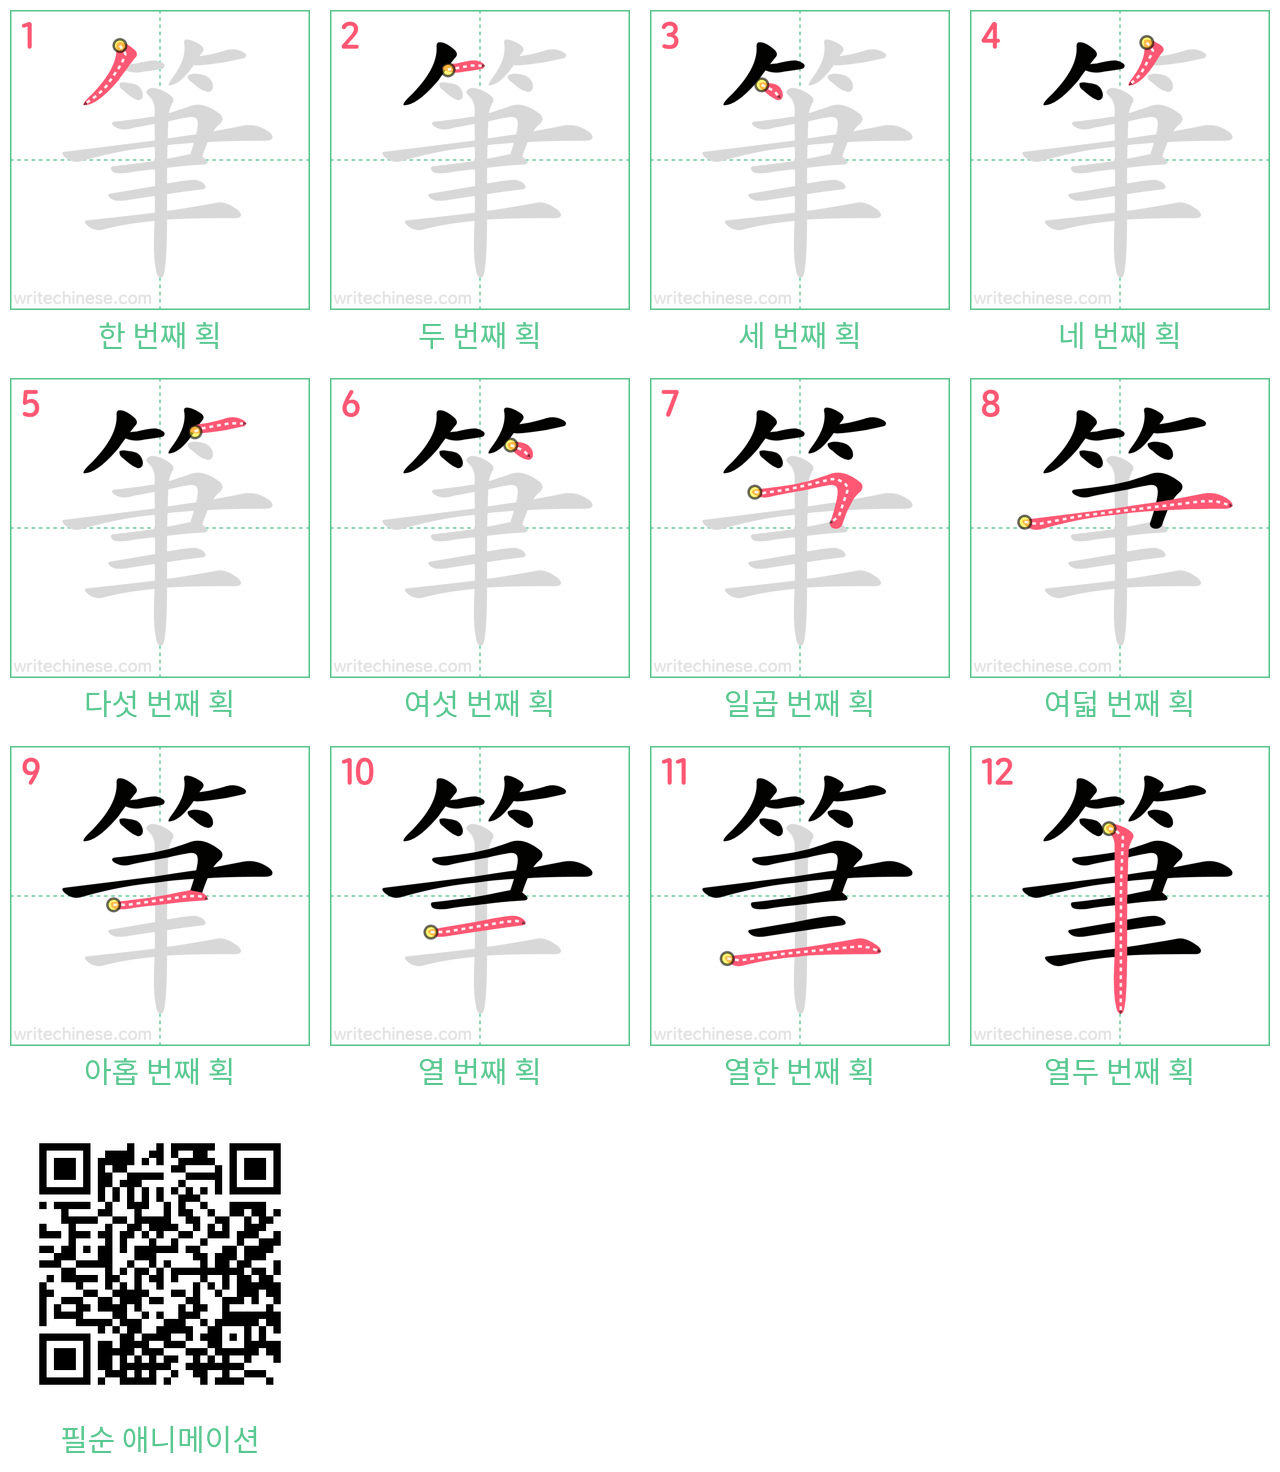 筆 step-by-step stroke order diagrams